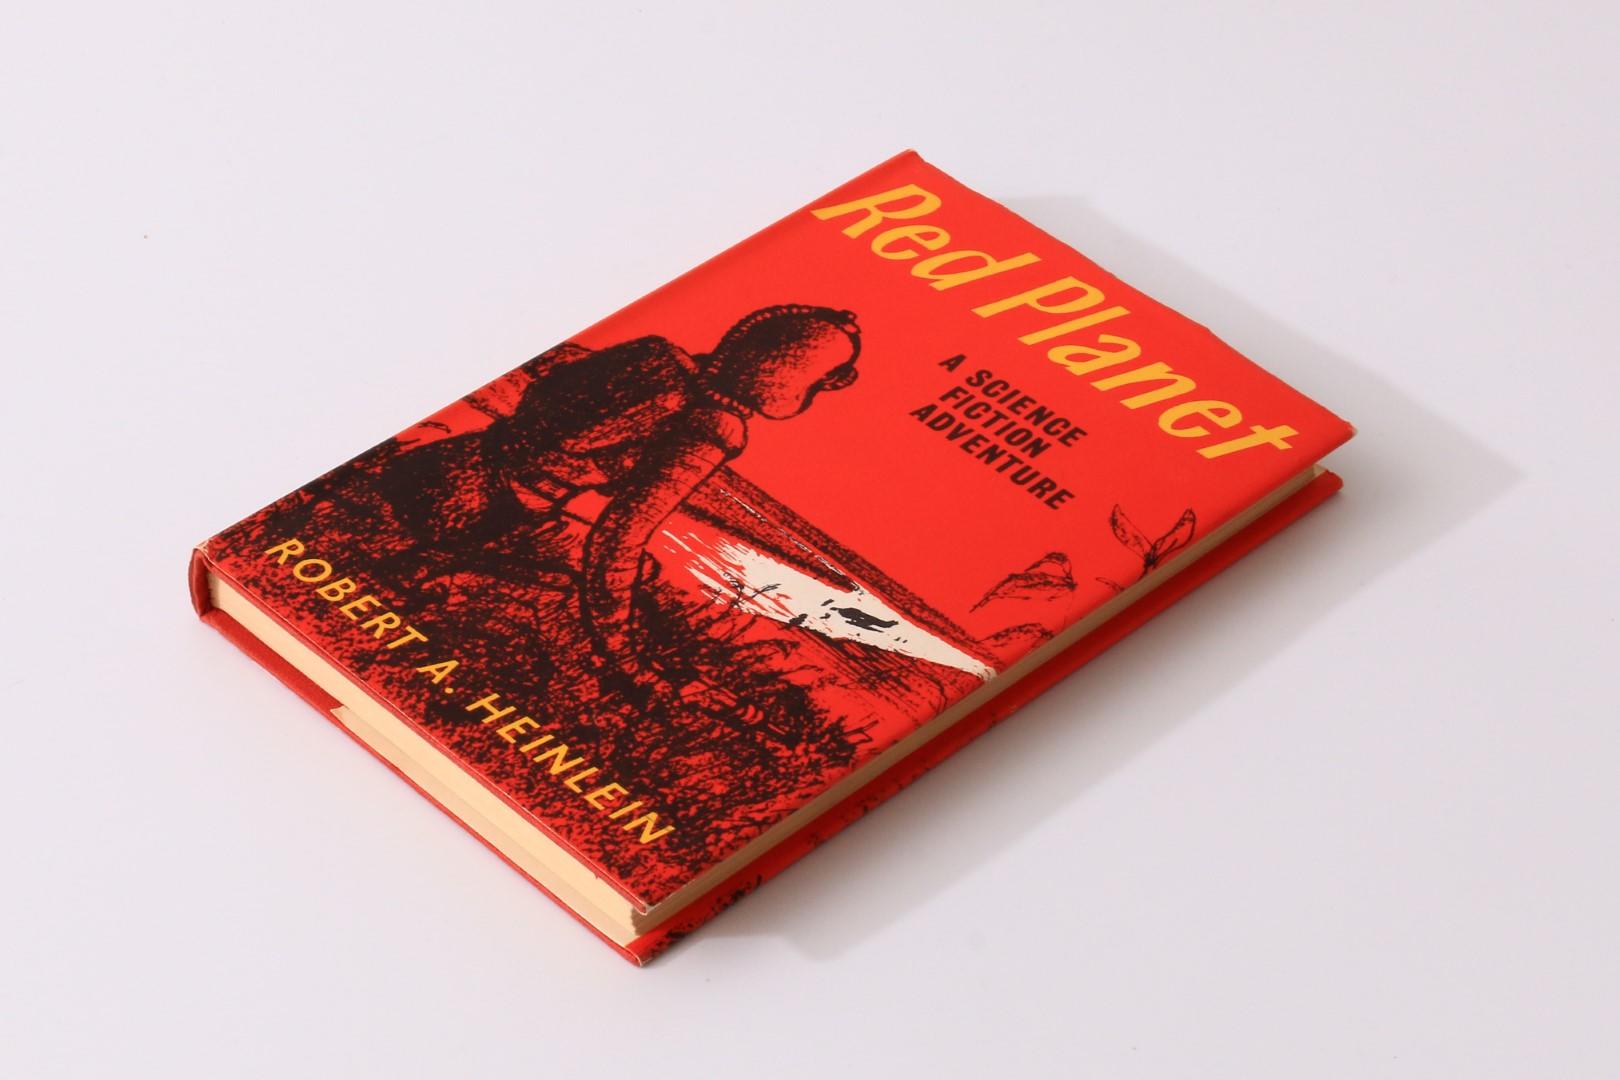 Robert A. Heinlein - Red Planet - Gollancz, 1963, First Edition.